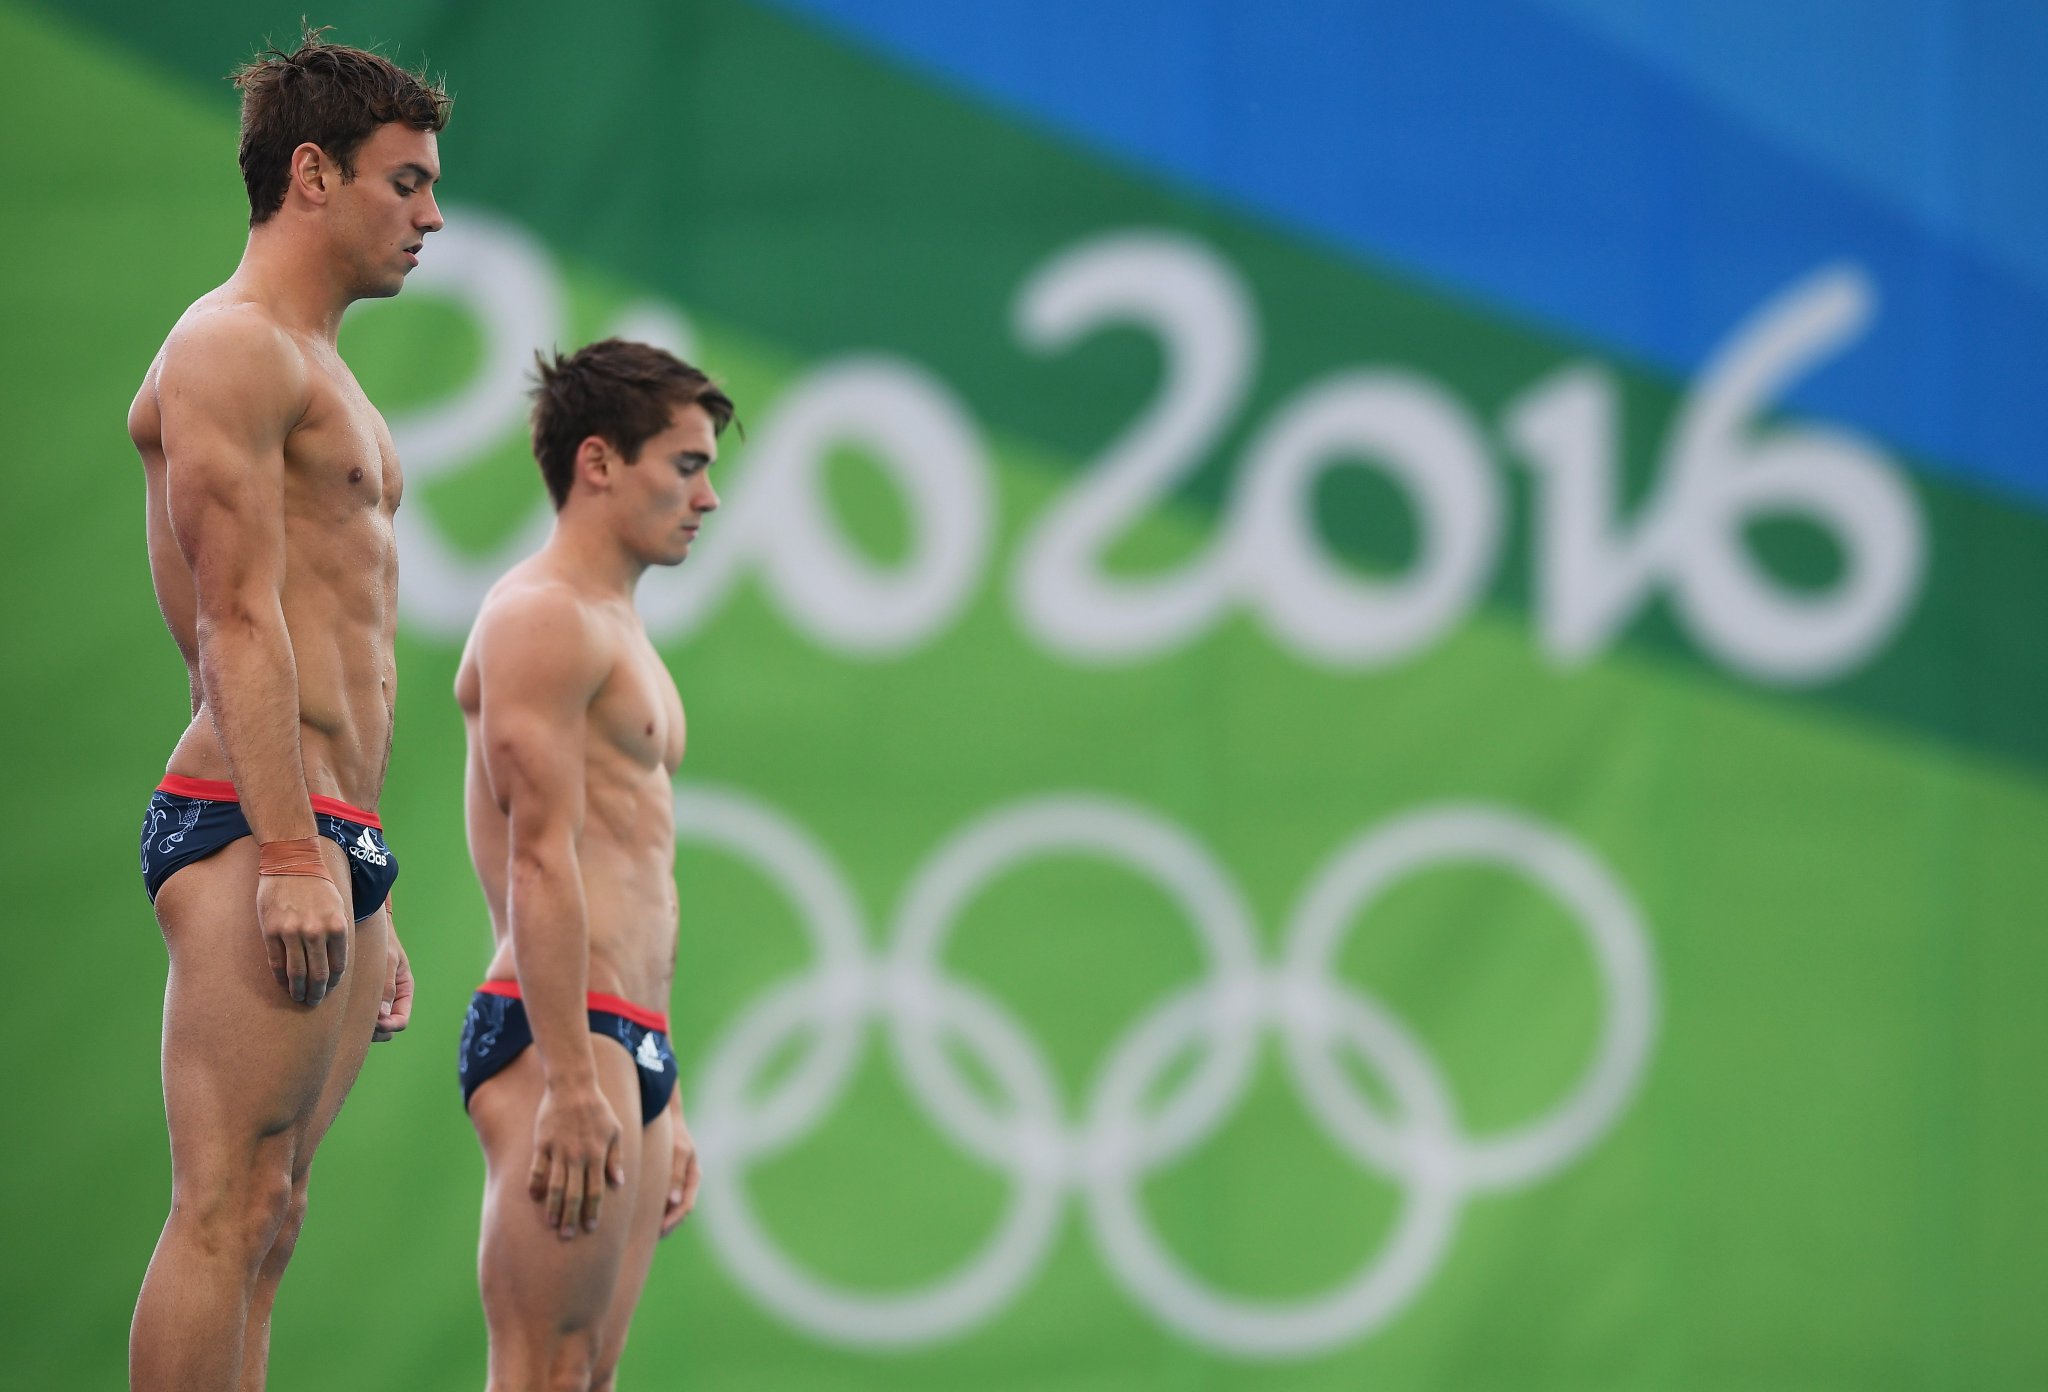 20 Momentos más sexis de los atletas acuáticos de Río 2016